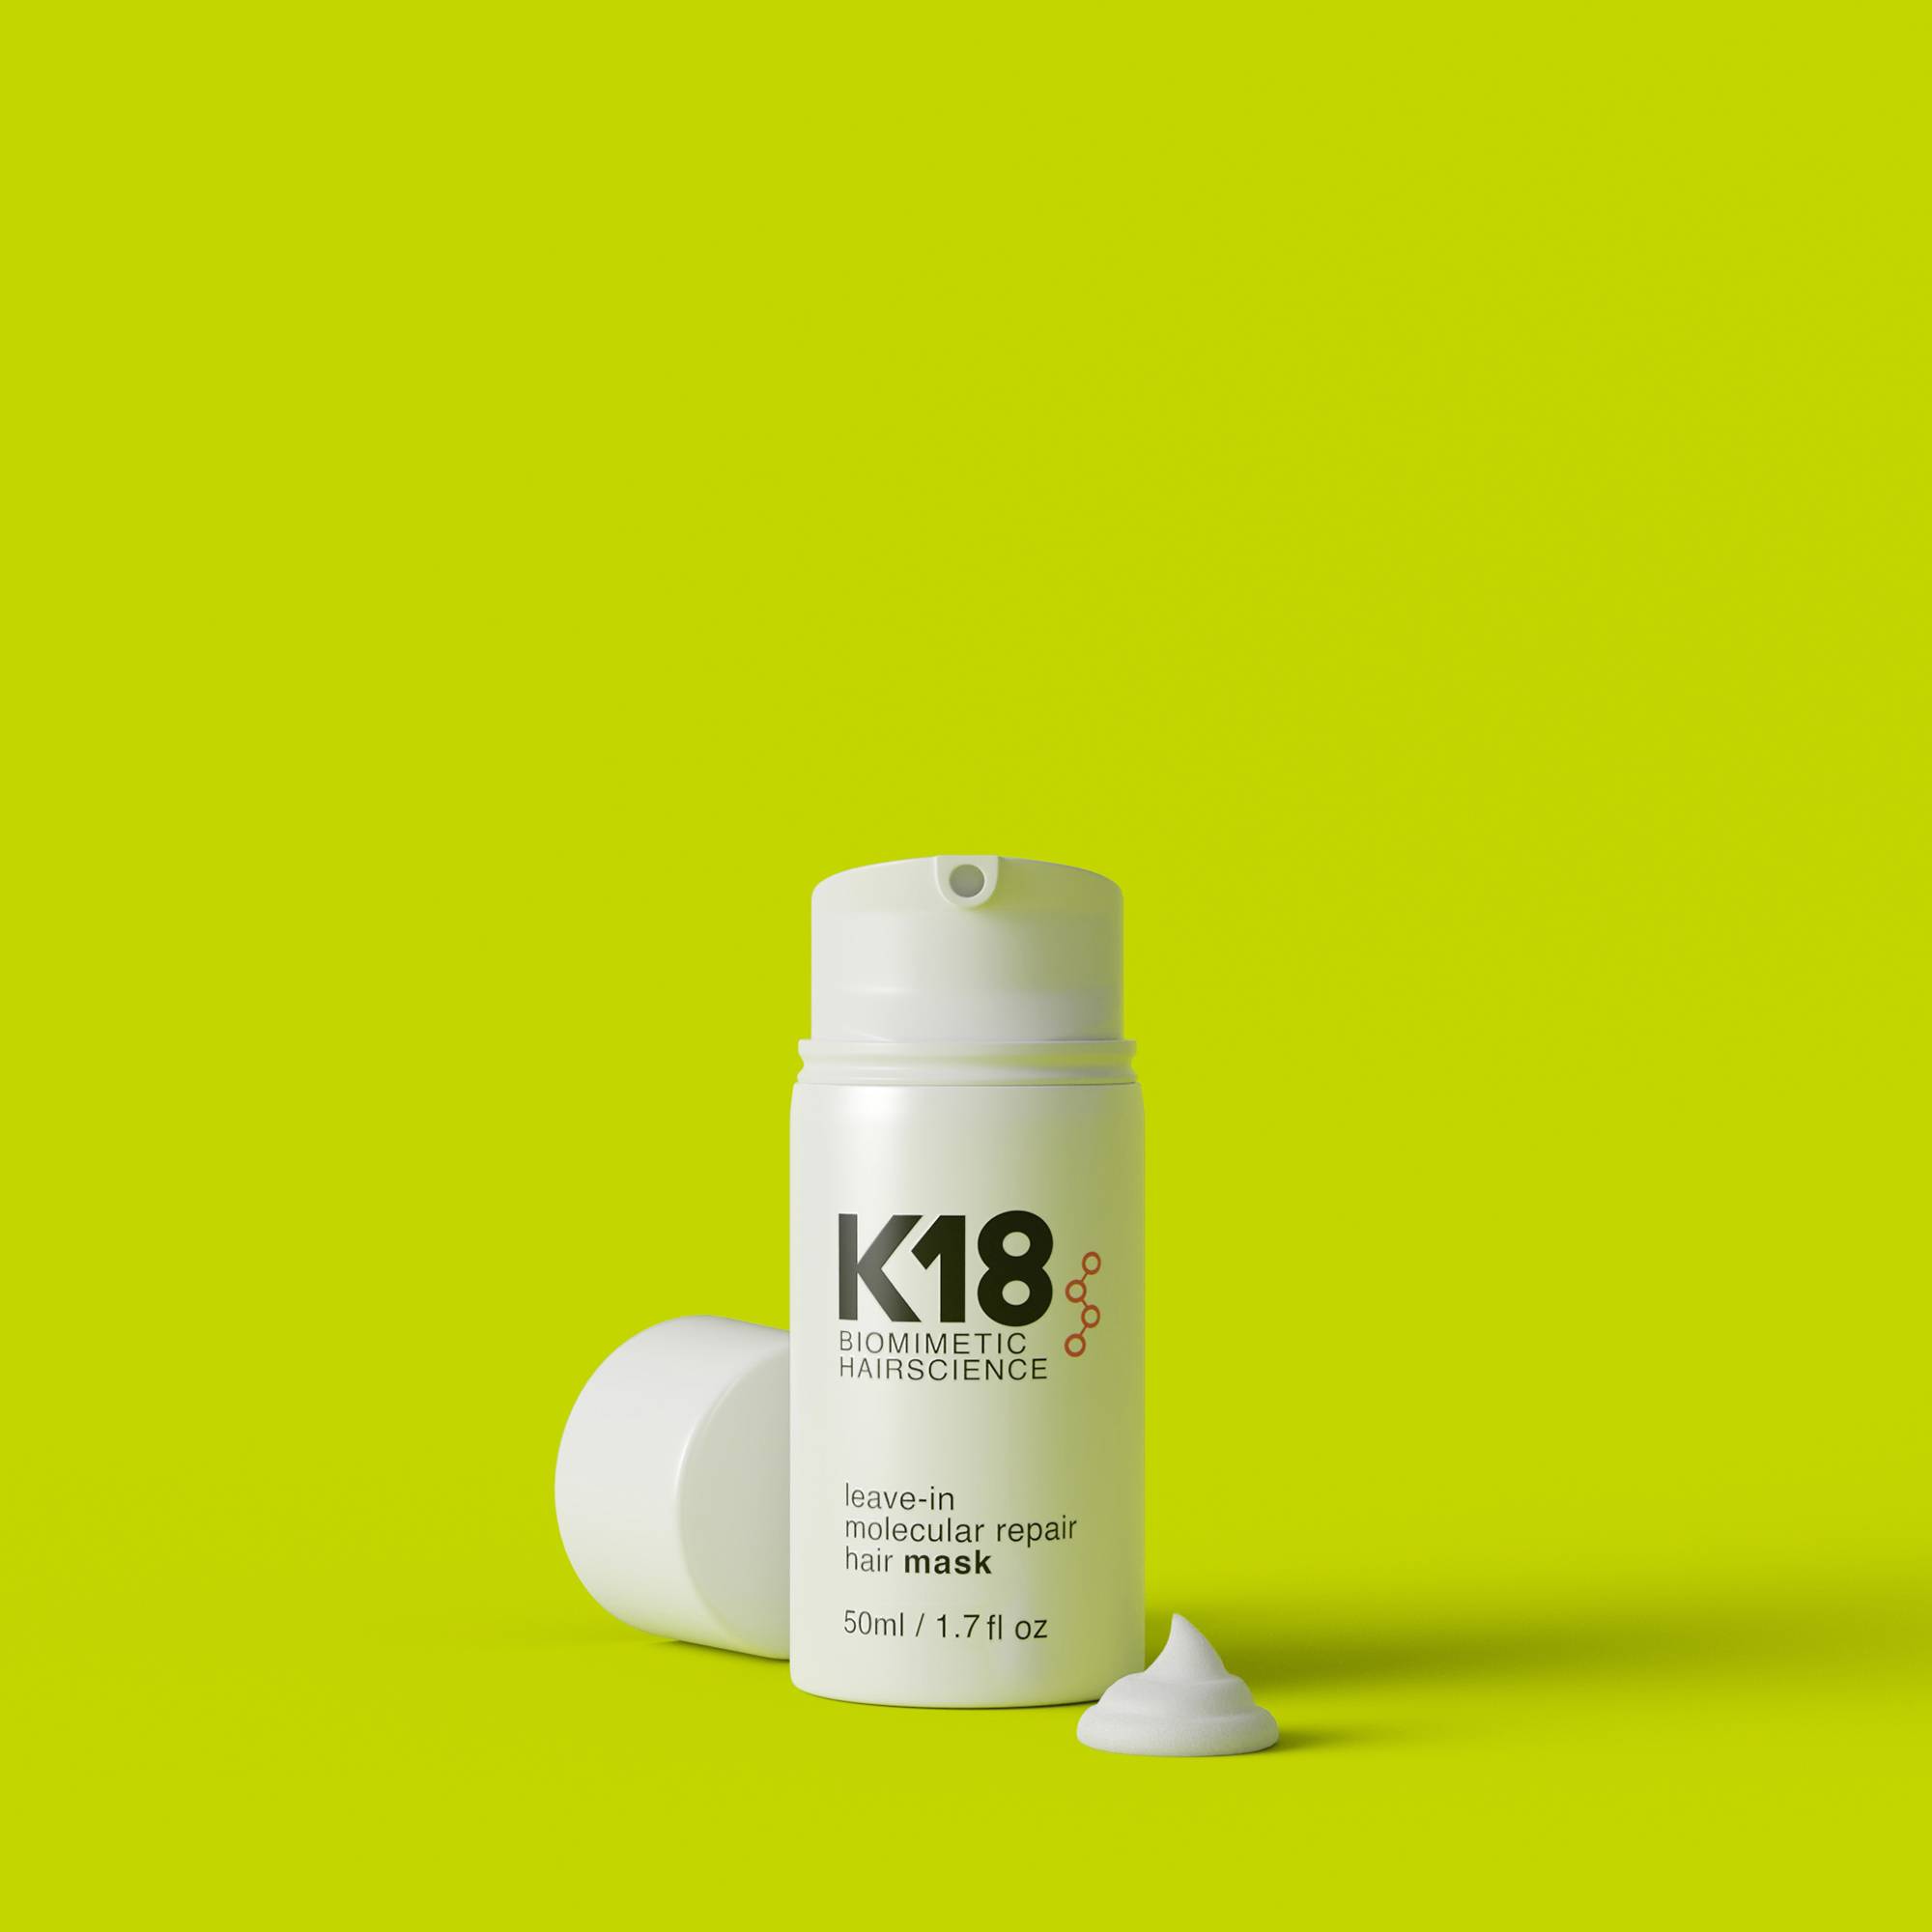 Masque sans rinçage réparation moléculaire Hair Mask de la marque K18 Biomimetic HairScience Contenance 50ml - 4